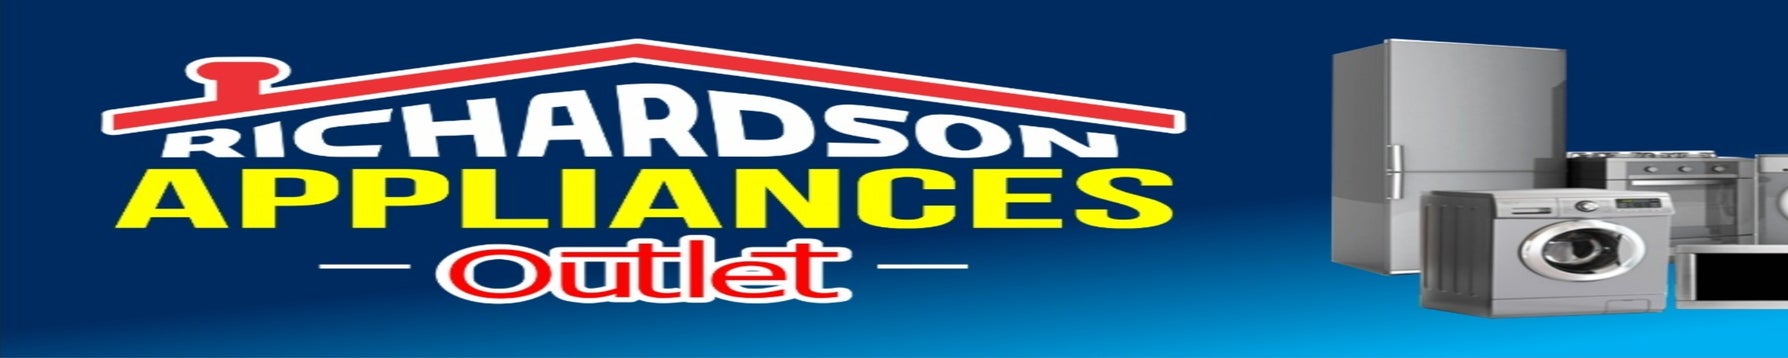 Shop Kitchen & Home Appliances, Richardson Appliance Sales & Service